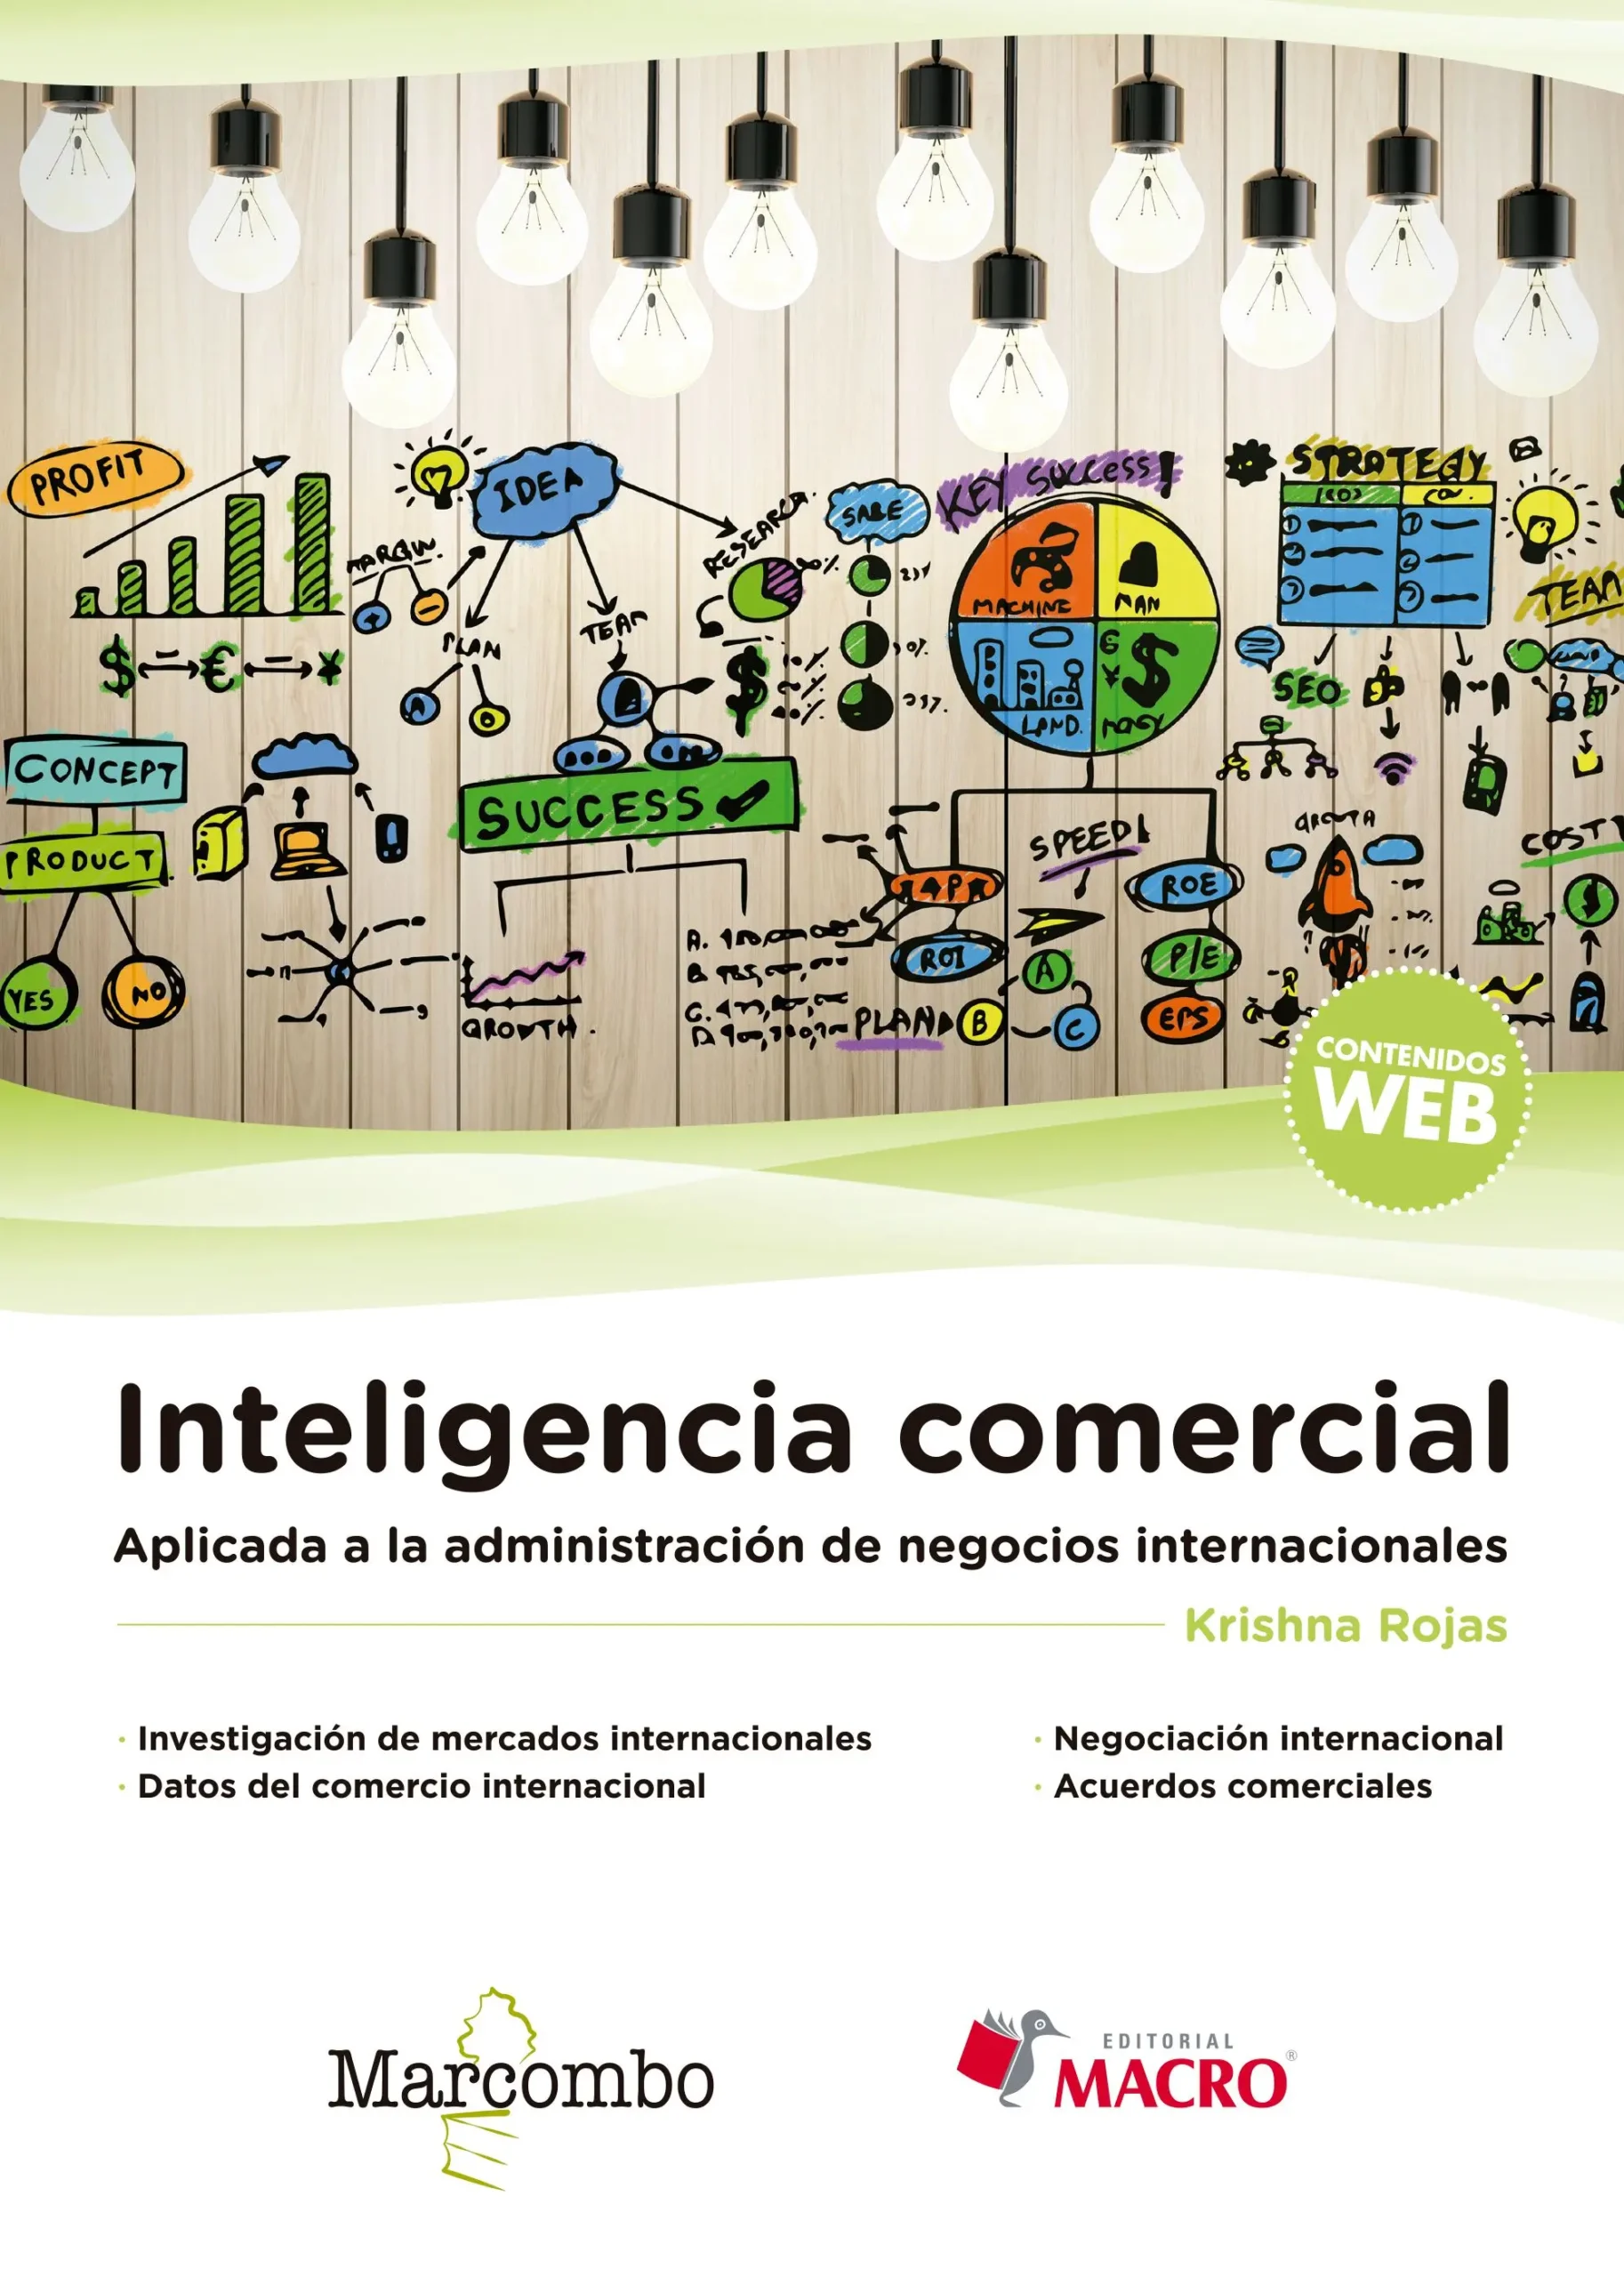 inteligencia comercial en los negocios internacionales - Qué es la inteligencia comercial internacional